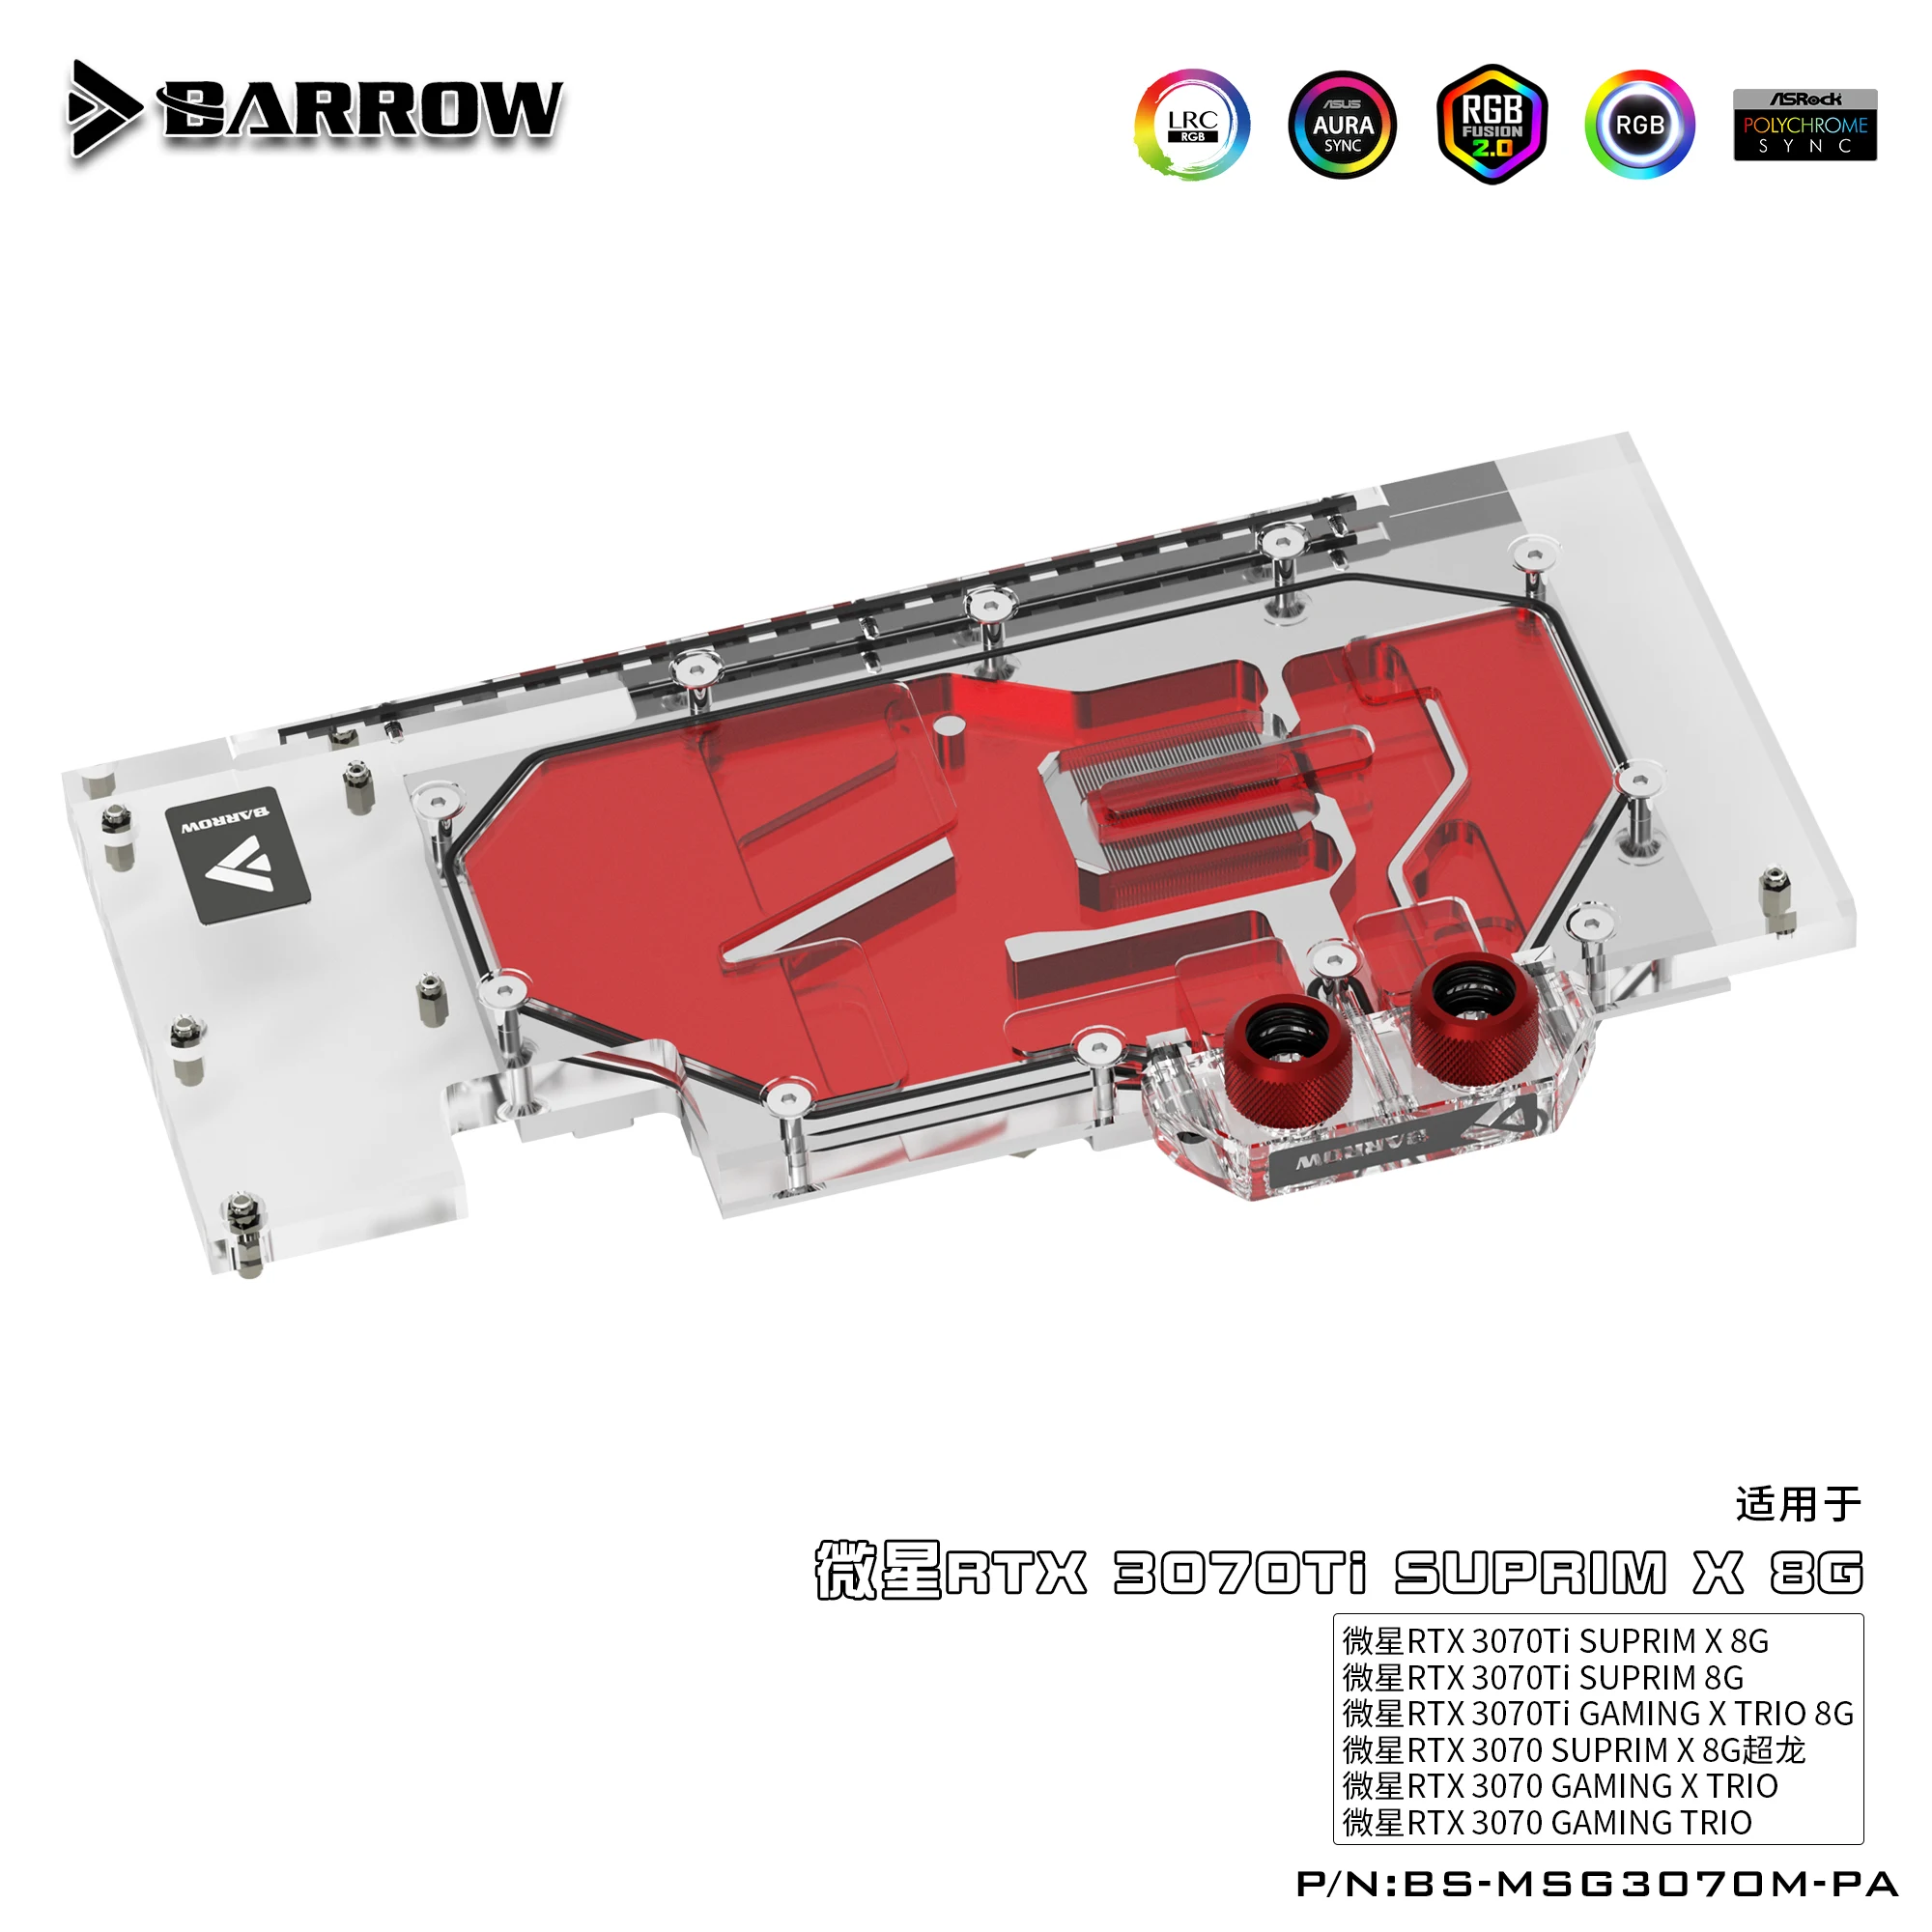 

Водяной блок Barrow 3070 для графического процессора MSI RTX 3070 GAMING X TRIO, кулер с полным покрытием для графического процессора ARGB, водяное охлаждение для ПК, стандартная